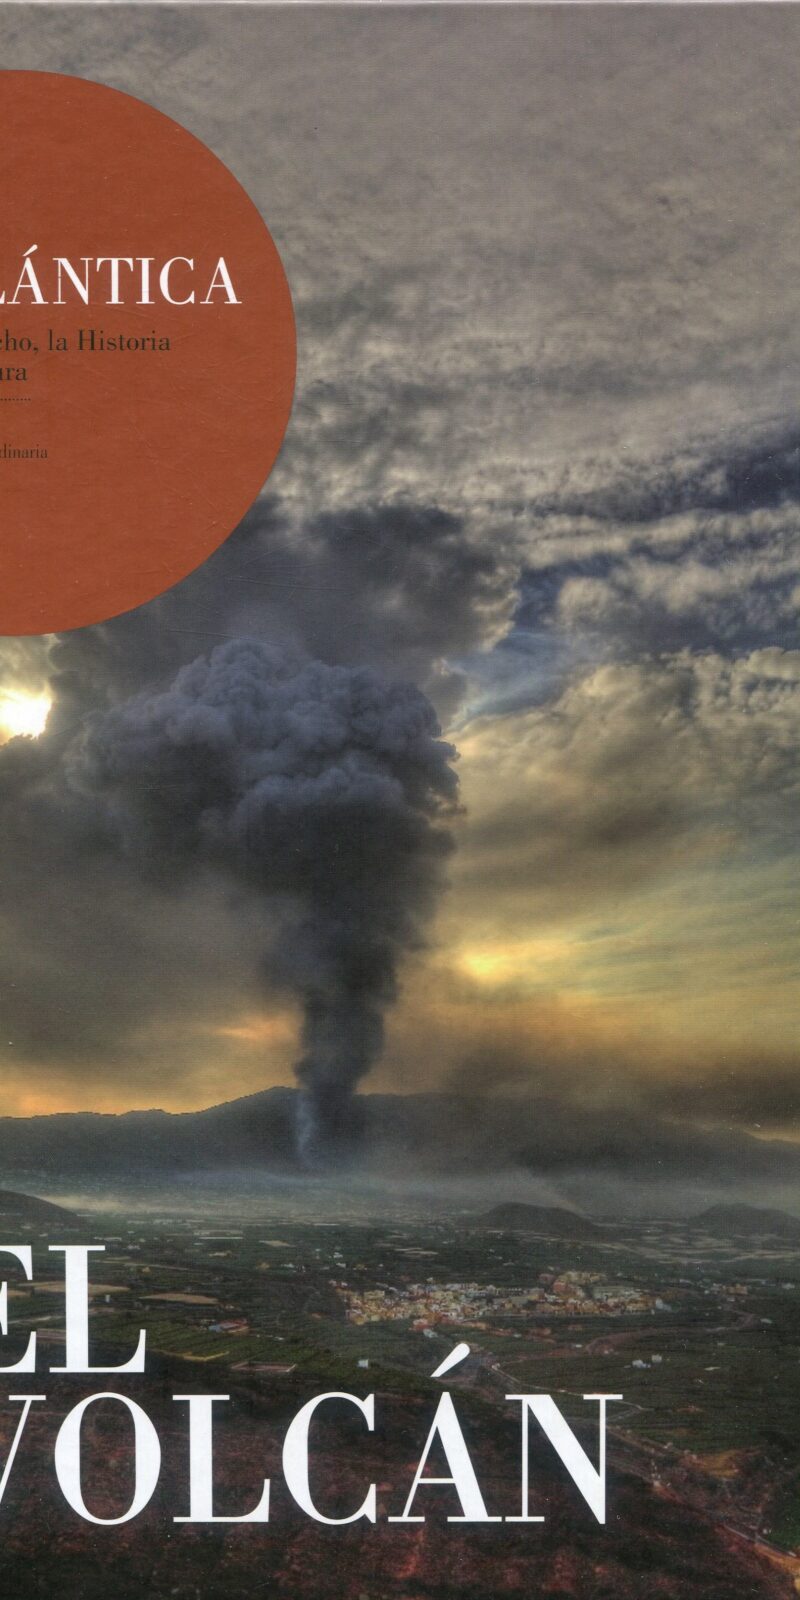 El volcán Revista atlántica / 9781061889272